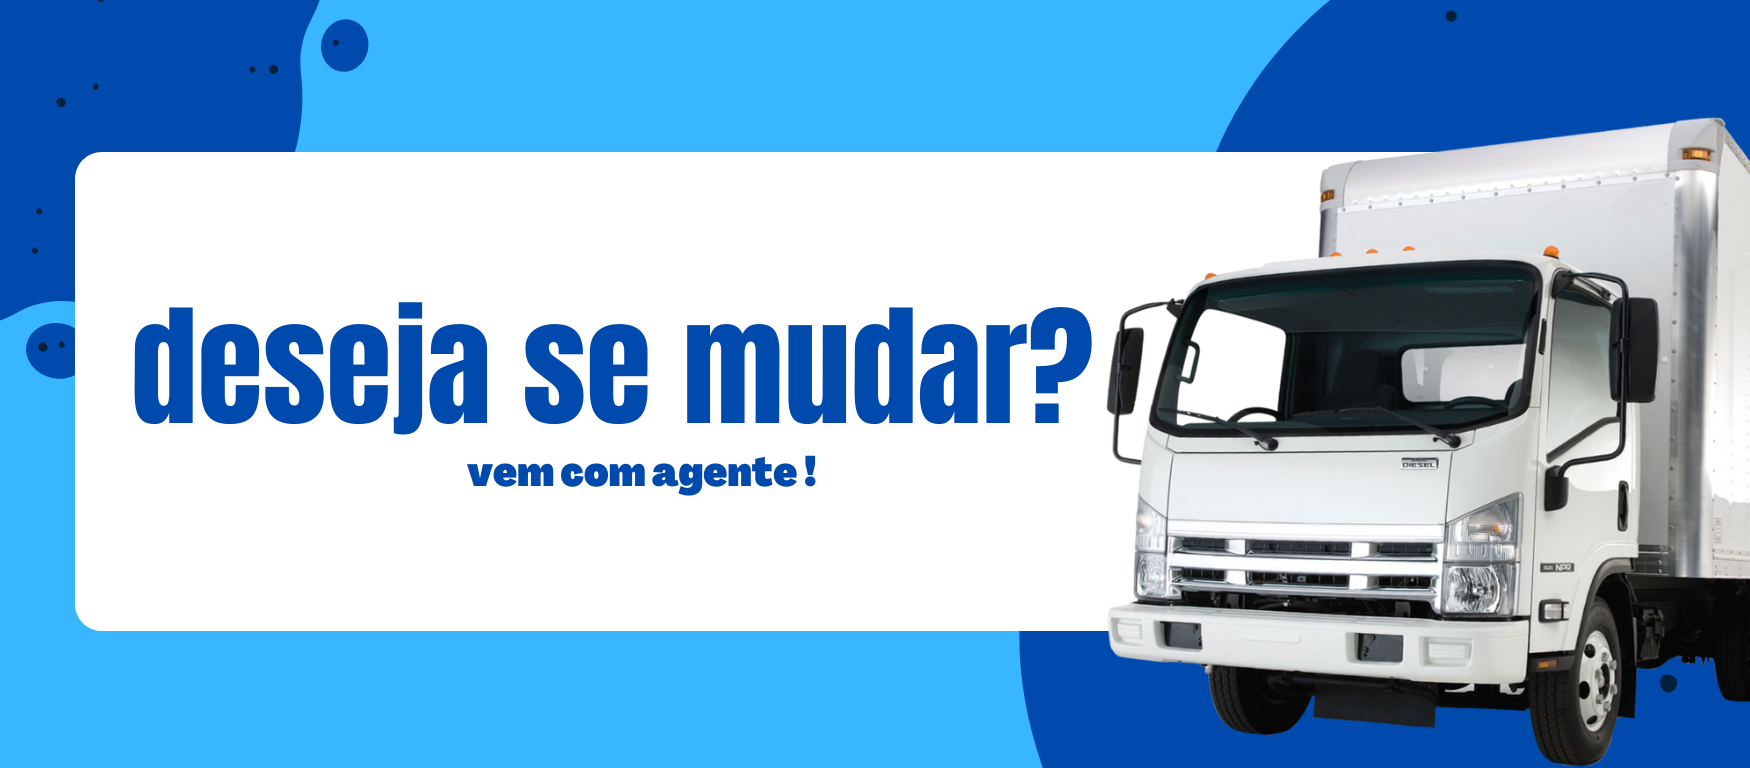 (c) Transportesdemudanca.com.br